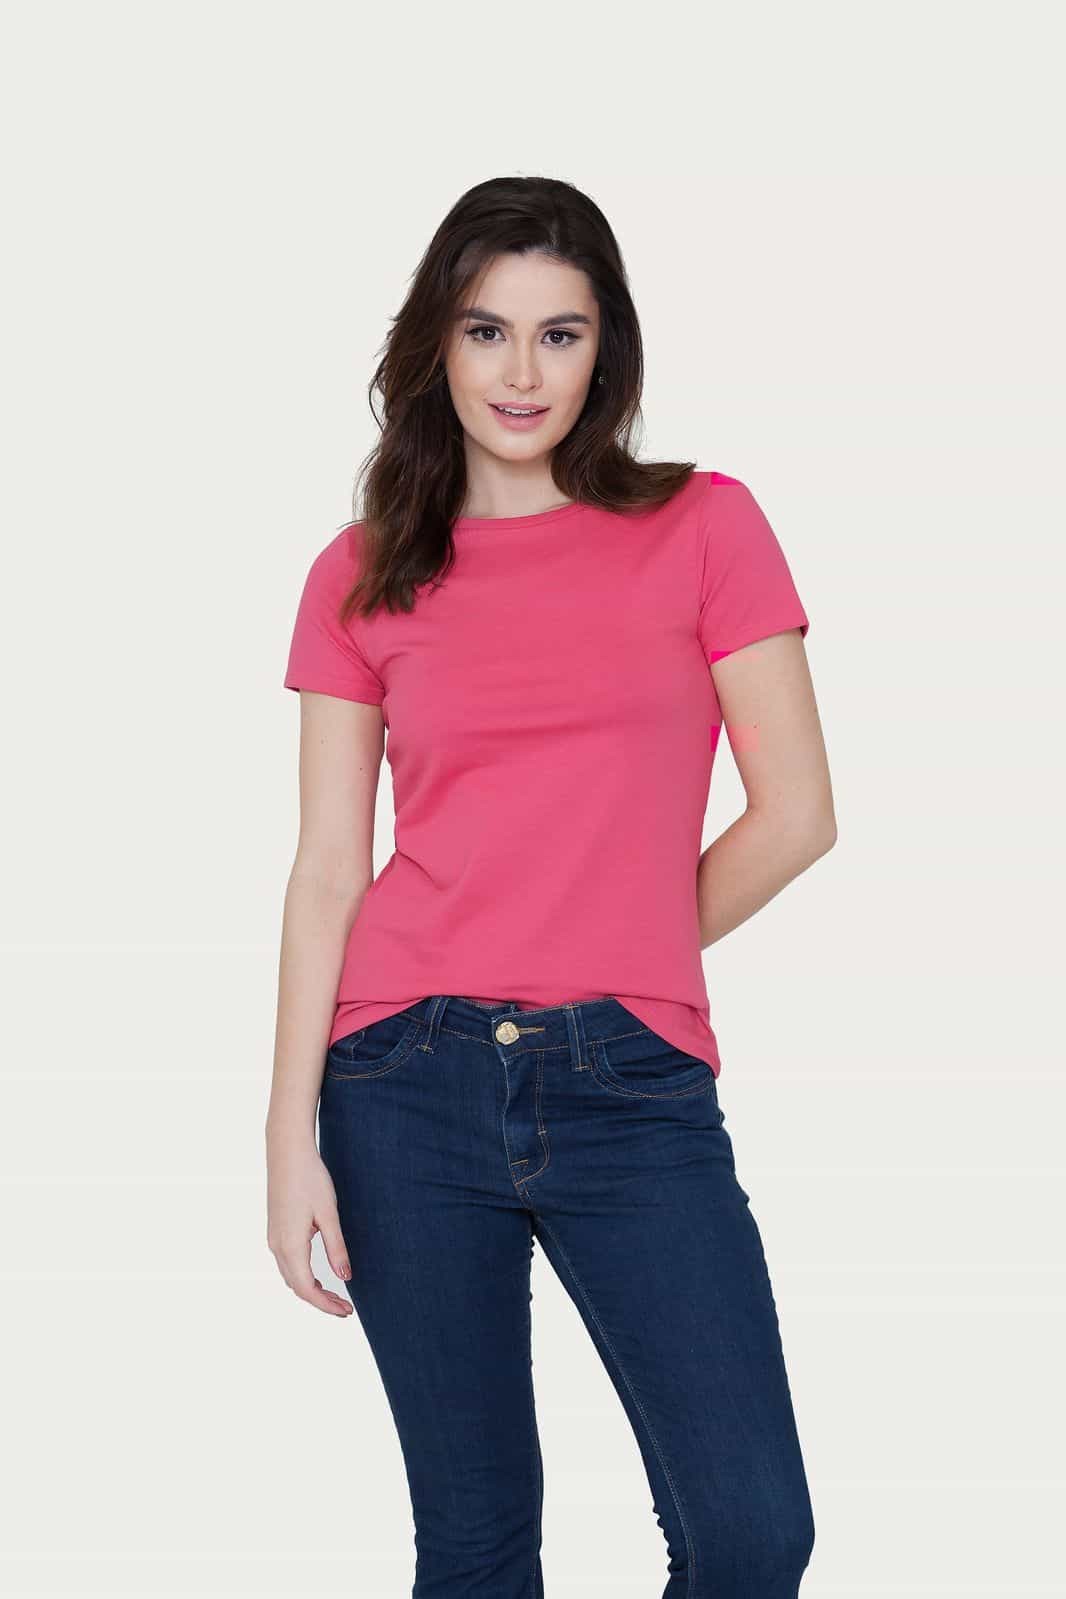 Camiseta feminina T-shirt básica algodão rosa pink em Promoção na